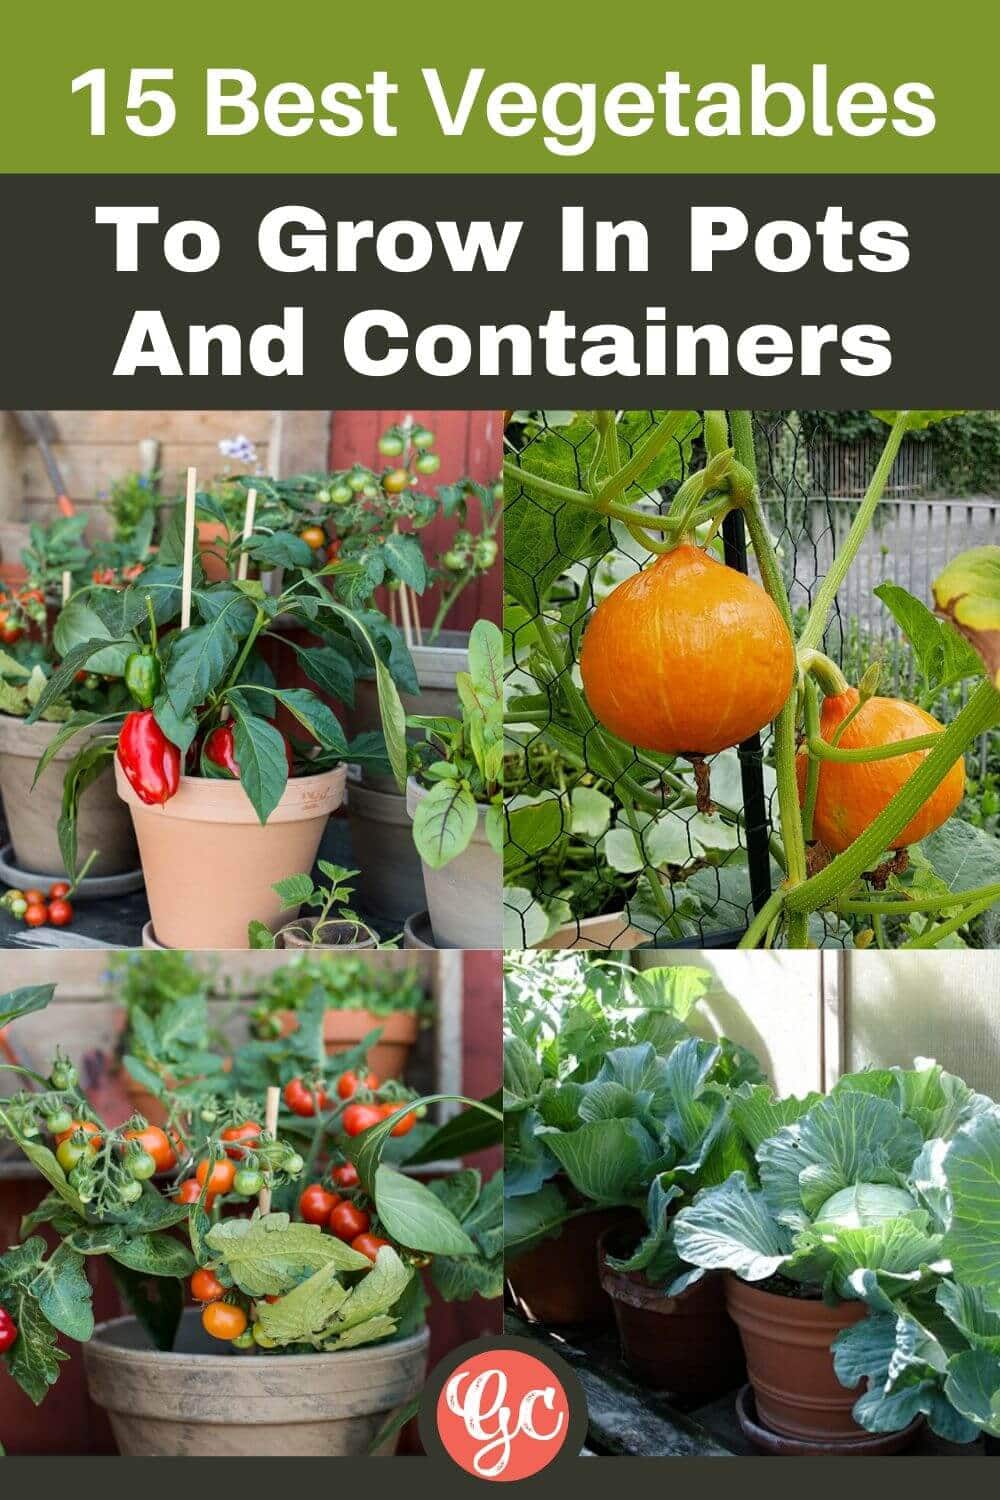  Os 15 melhores legumes para cultivar em vasos e recipientes